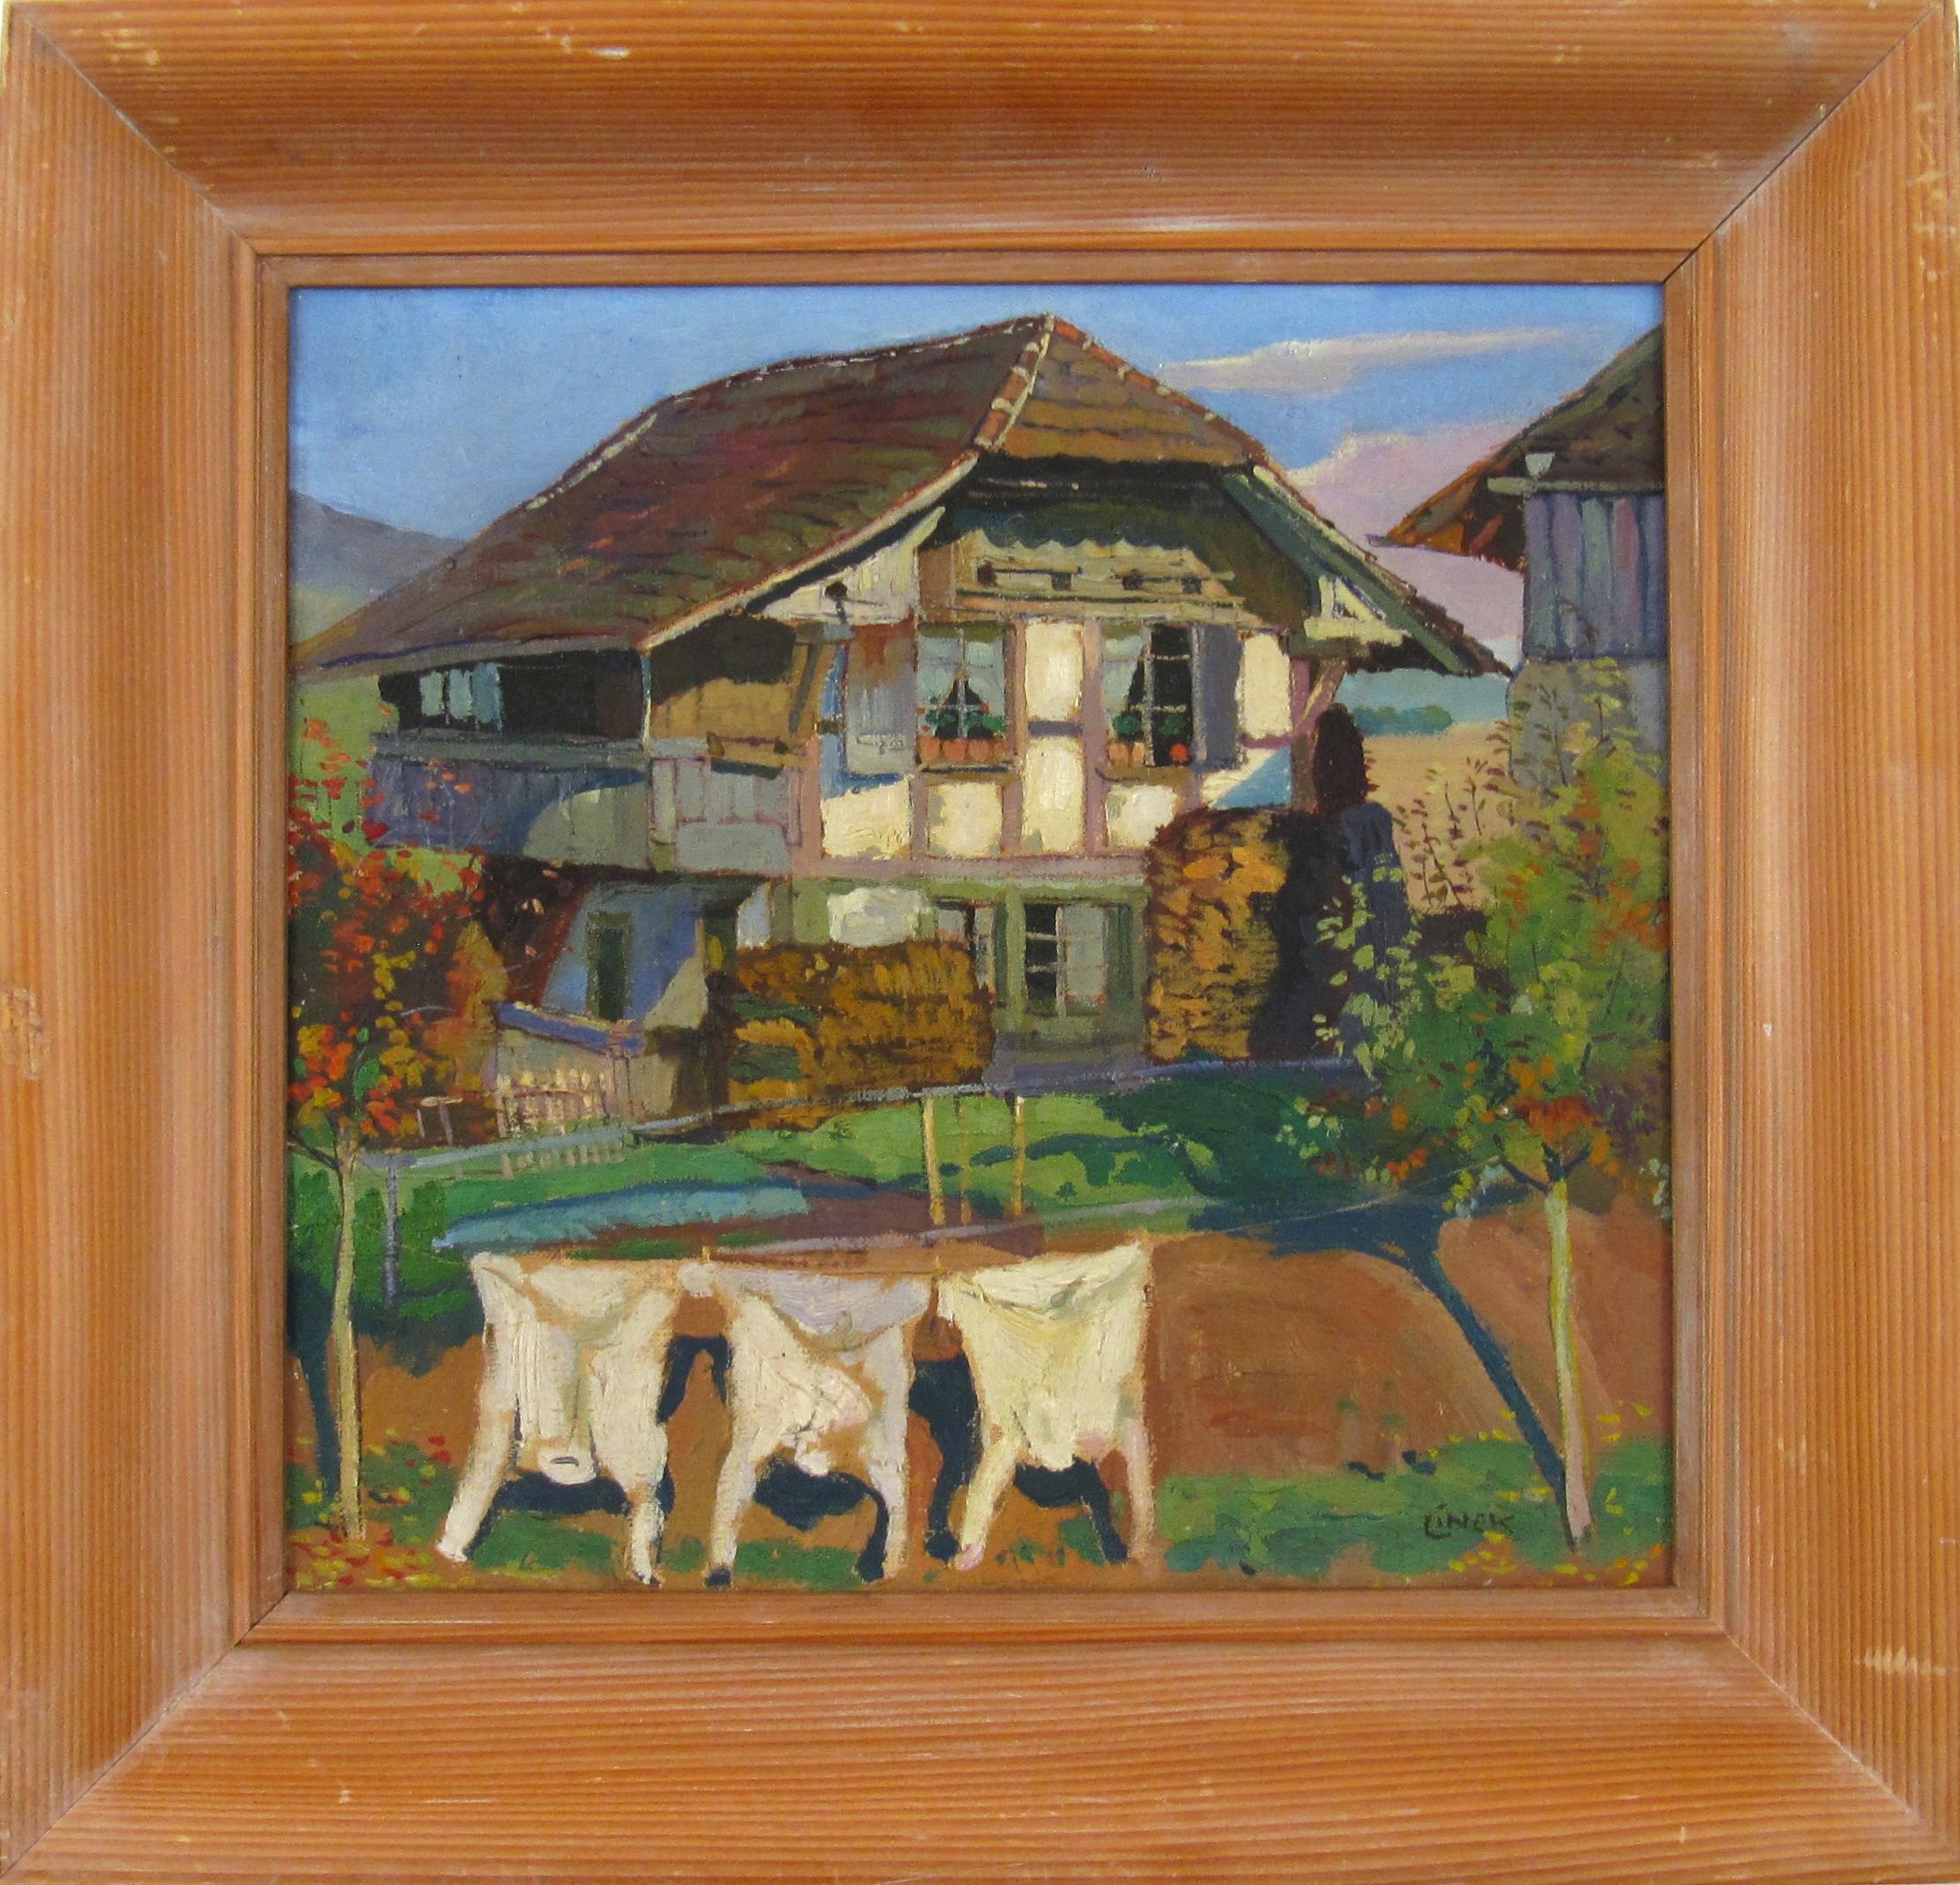 Landscape Painting Ernst Linck - Ernst LINCK (1874 - 1935) Ferme avec école de clothesline de Berne, Suisse